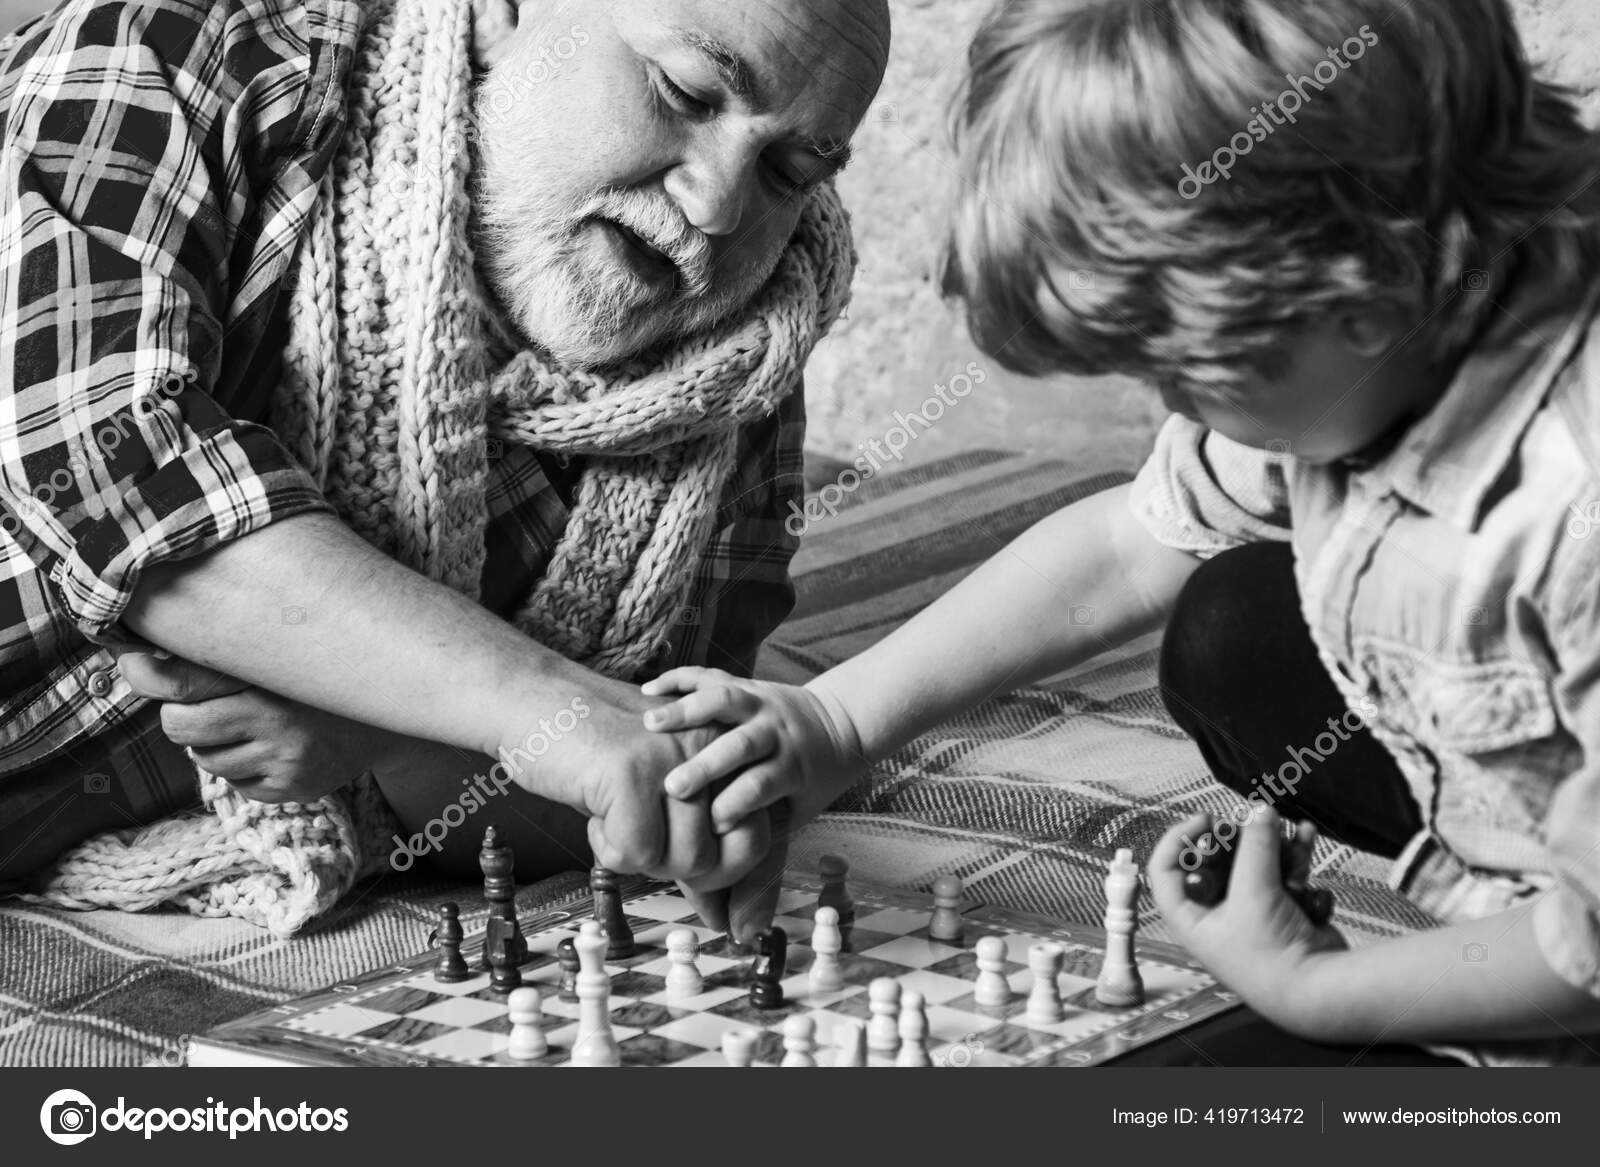 Infância. Sênior Ensinando Seu Neto a Jogar Xadrez. Criança